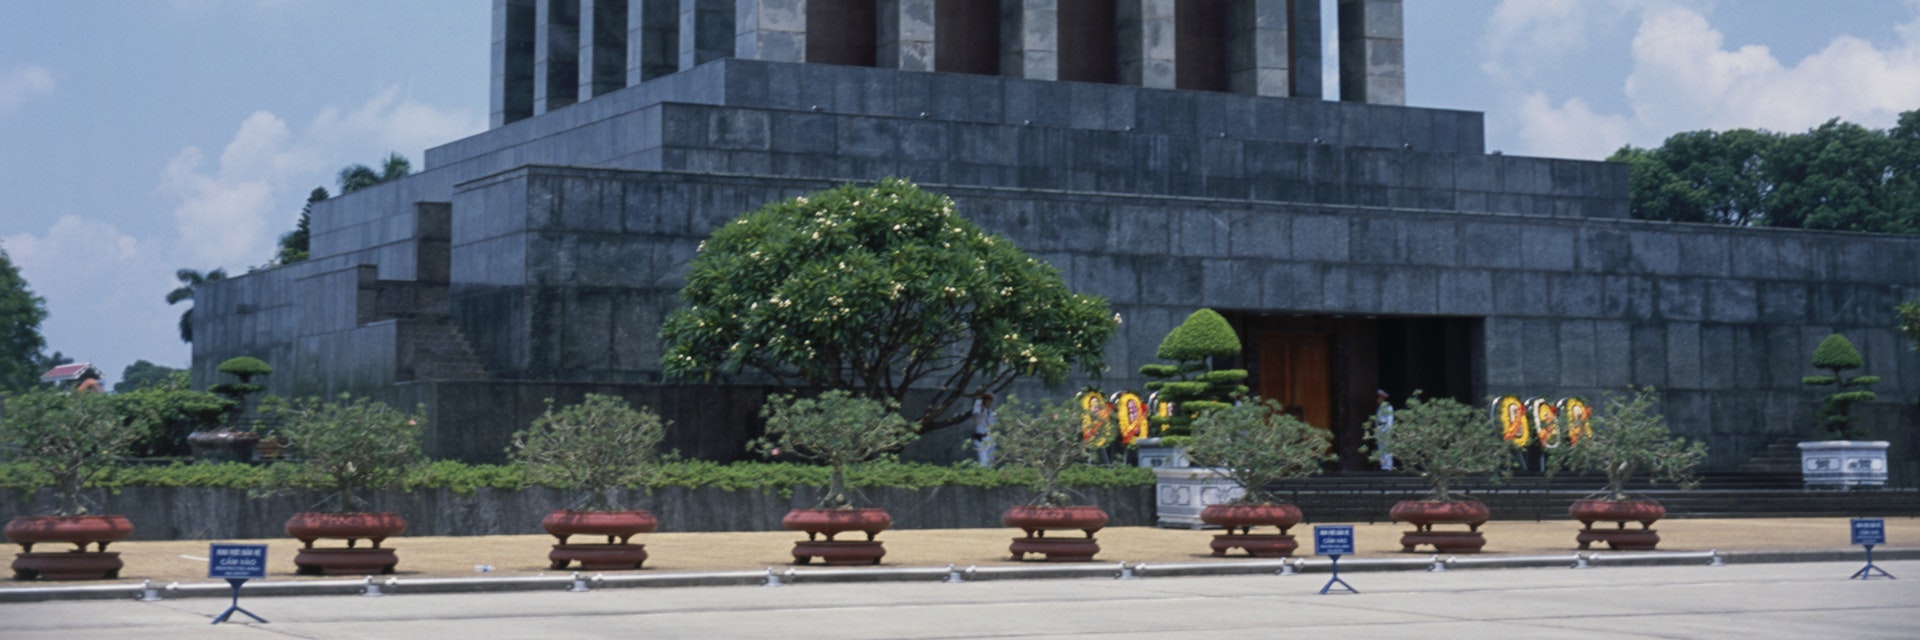 Vietnam, Hanoi, Ba Dinh Square, Ho Chi Minh Mausoleum, exterior of monumental building on dais